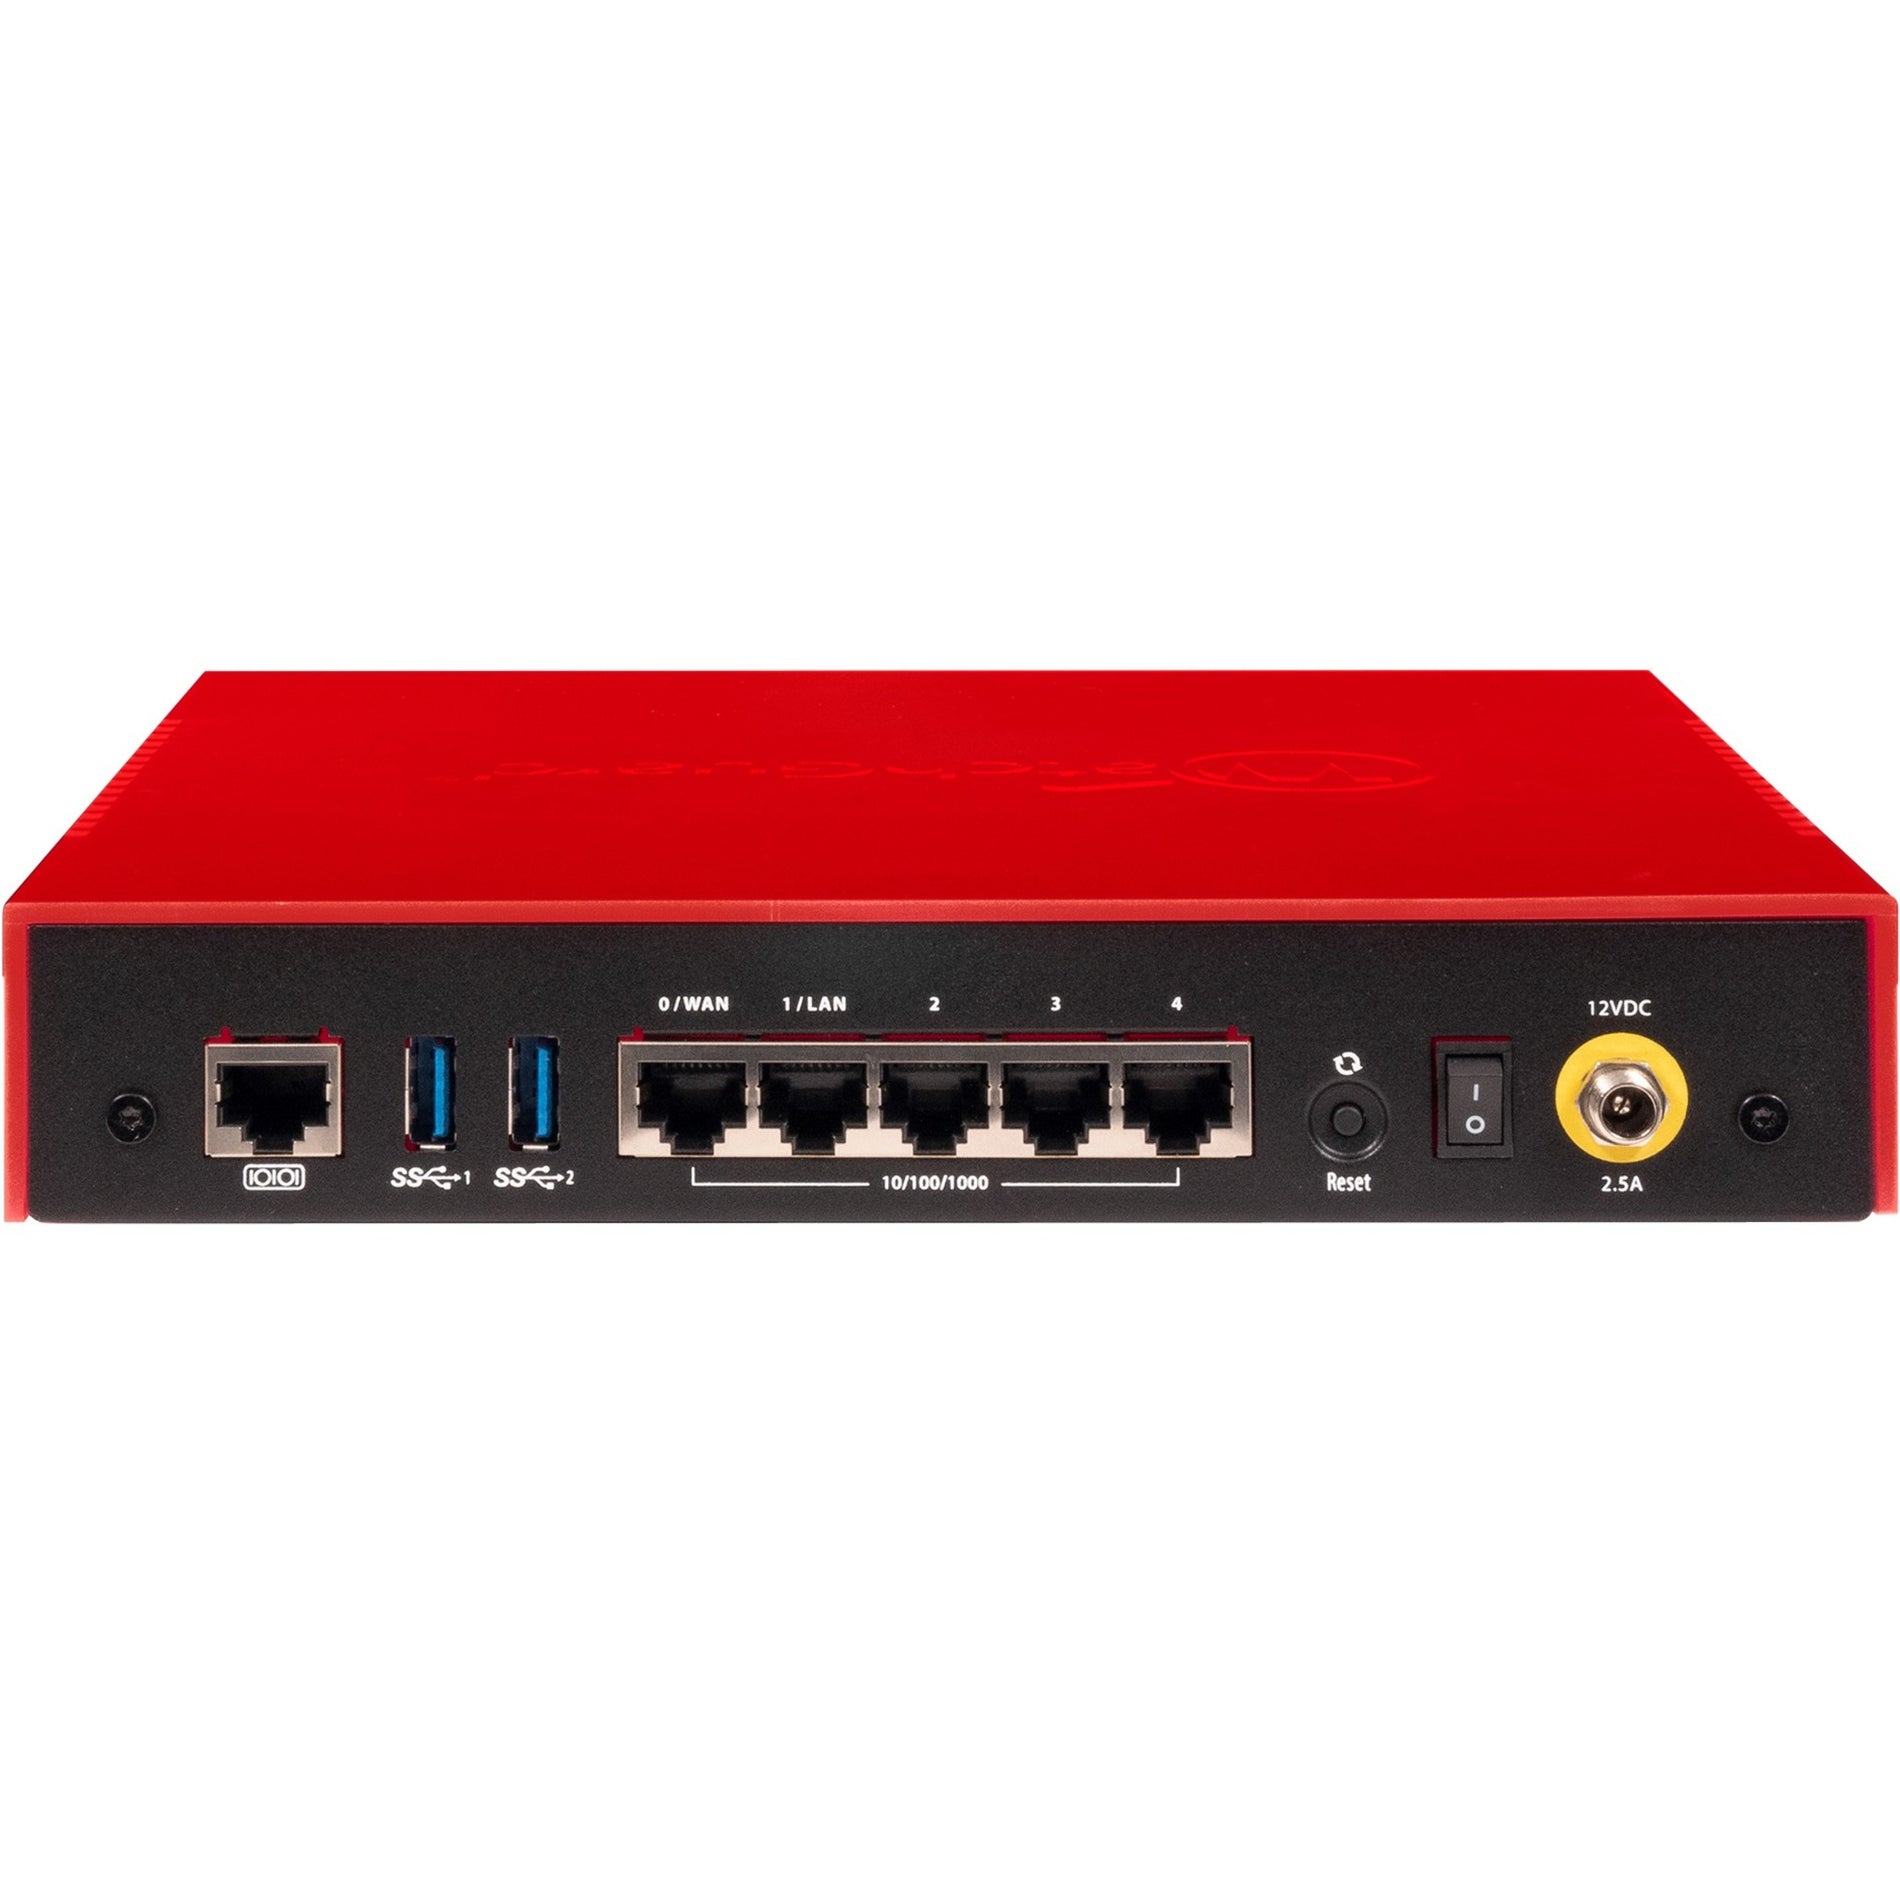 WatchGuard Firebox T20 Network Security/Firewall Appliance [Discontinued]